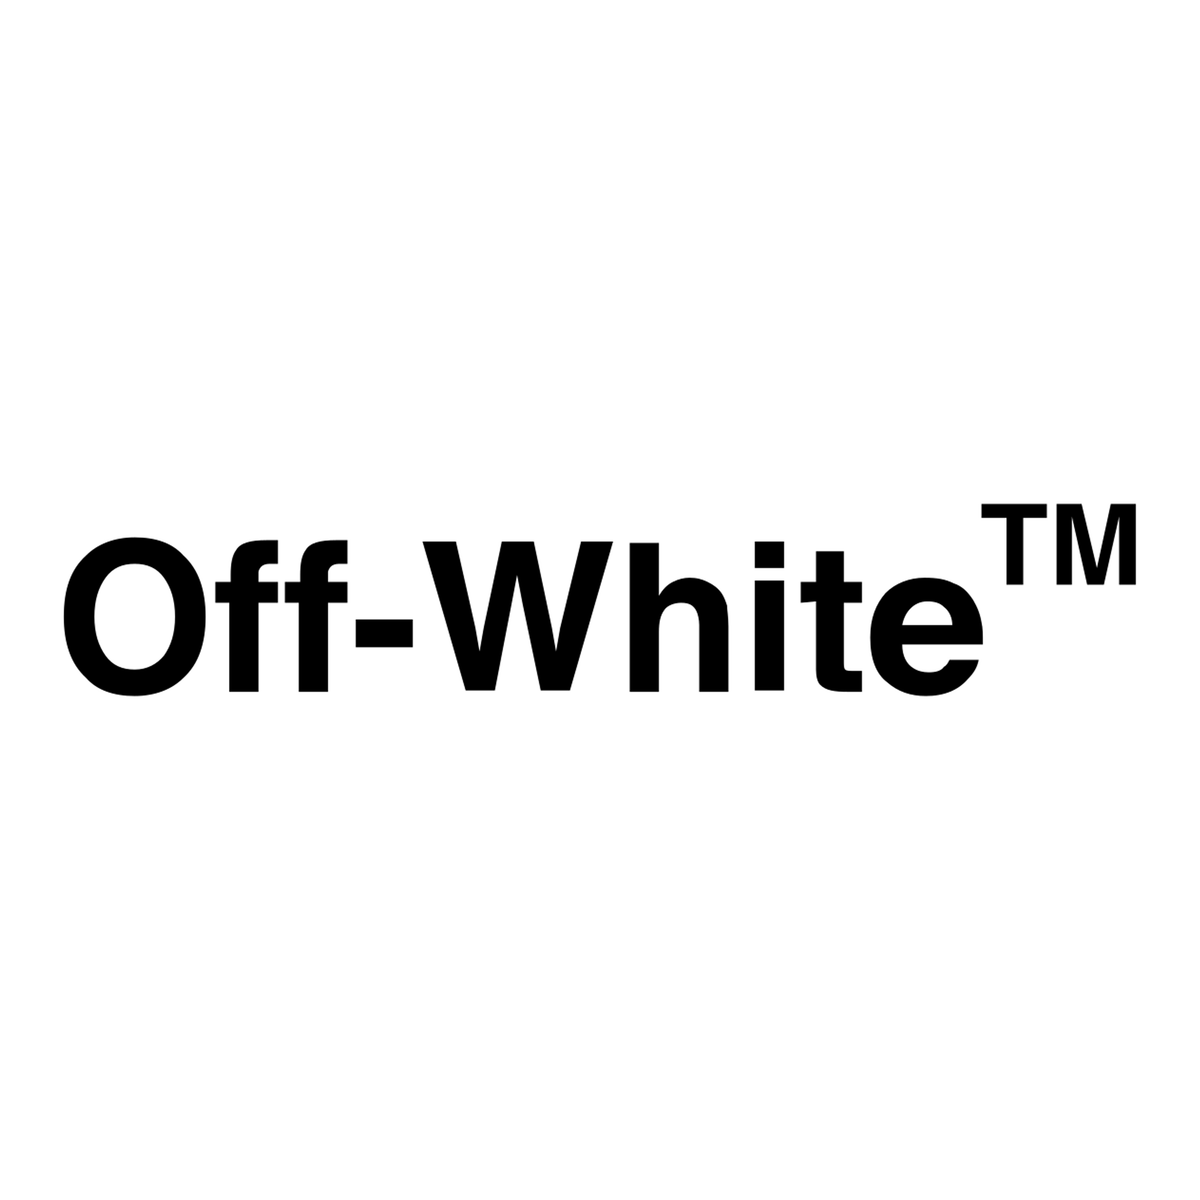 Off-White | Re:Store Melbourne